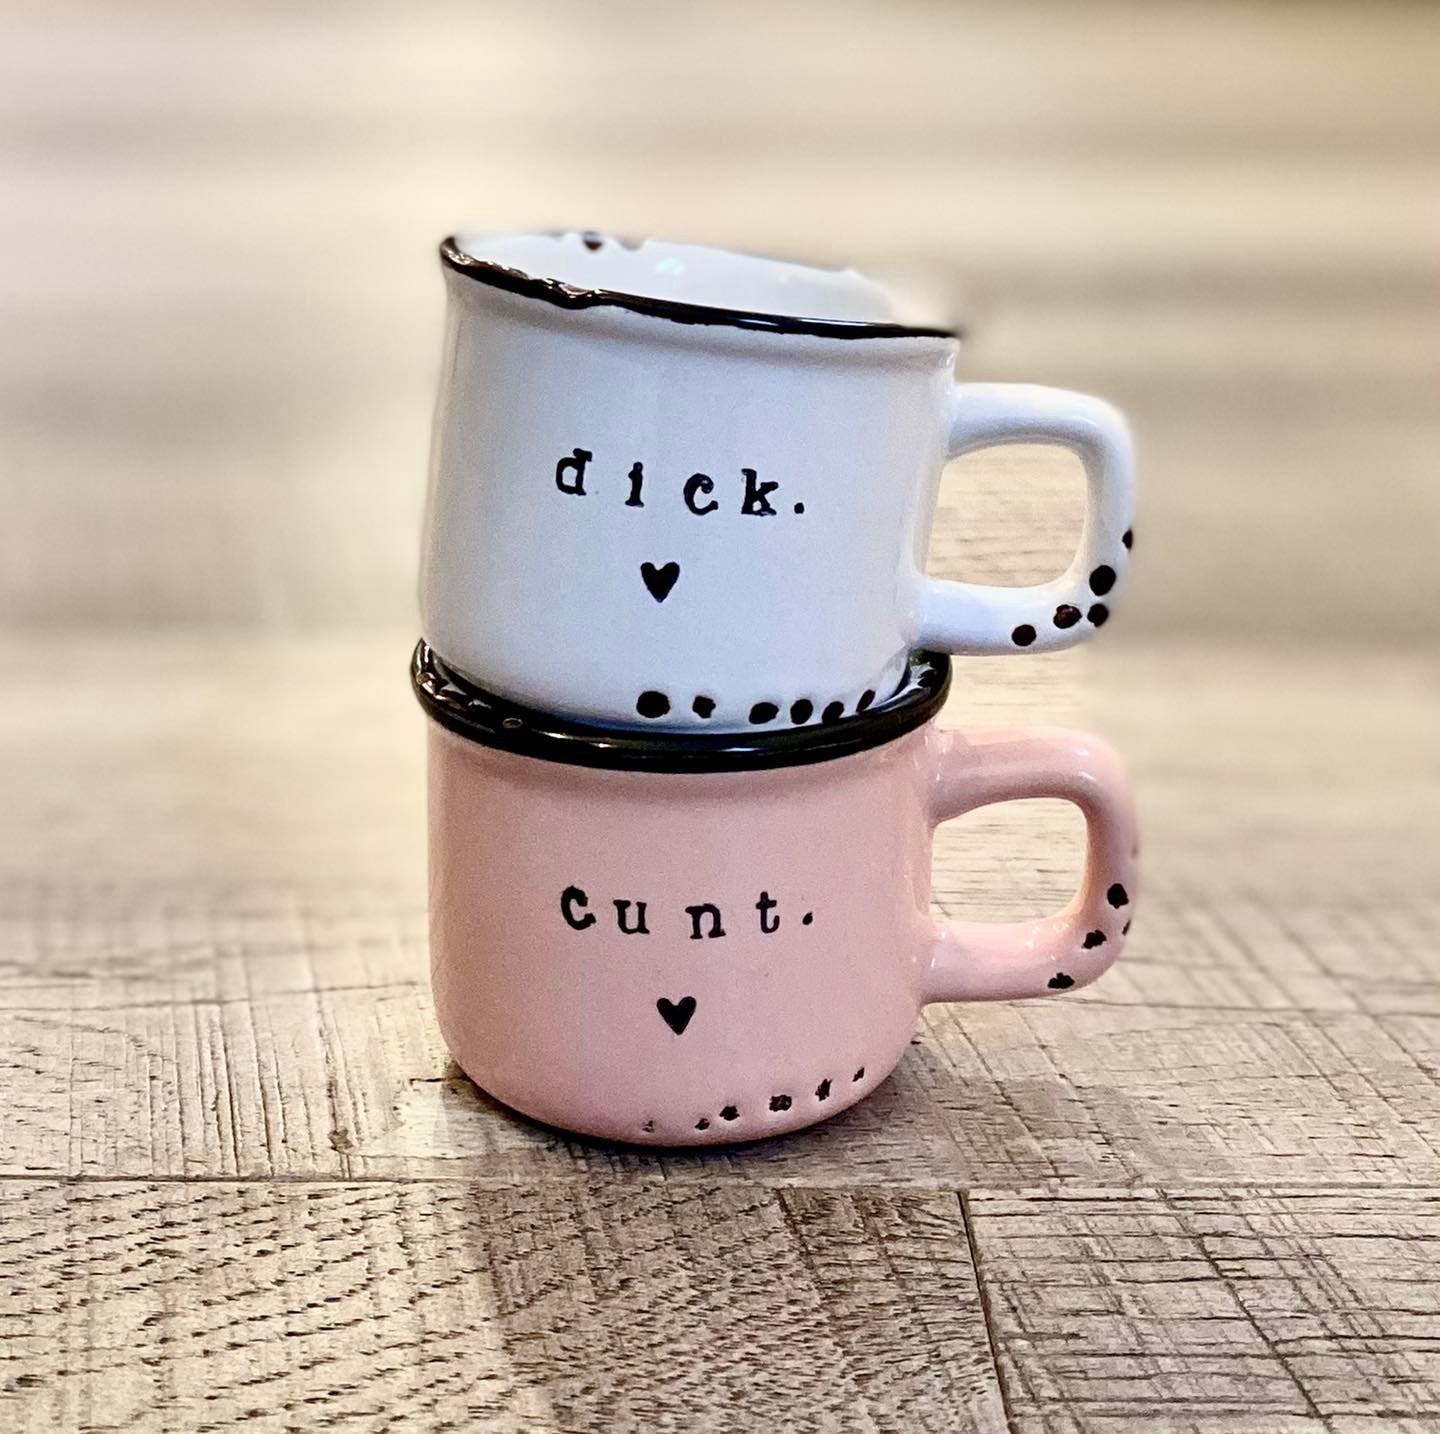 Dick and cunt mug SET